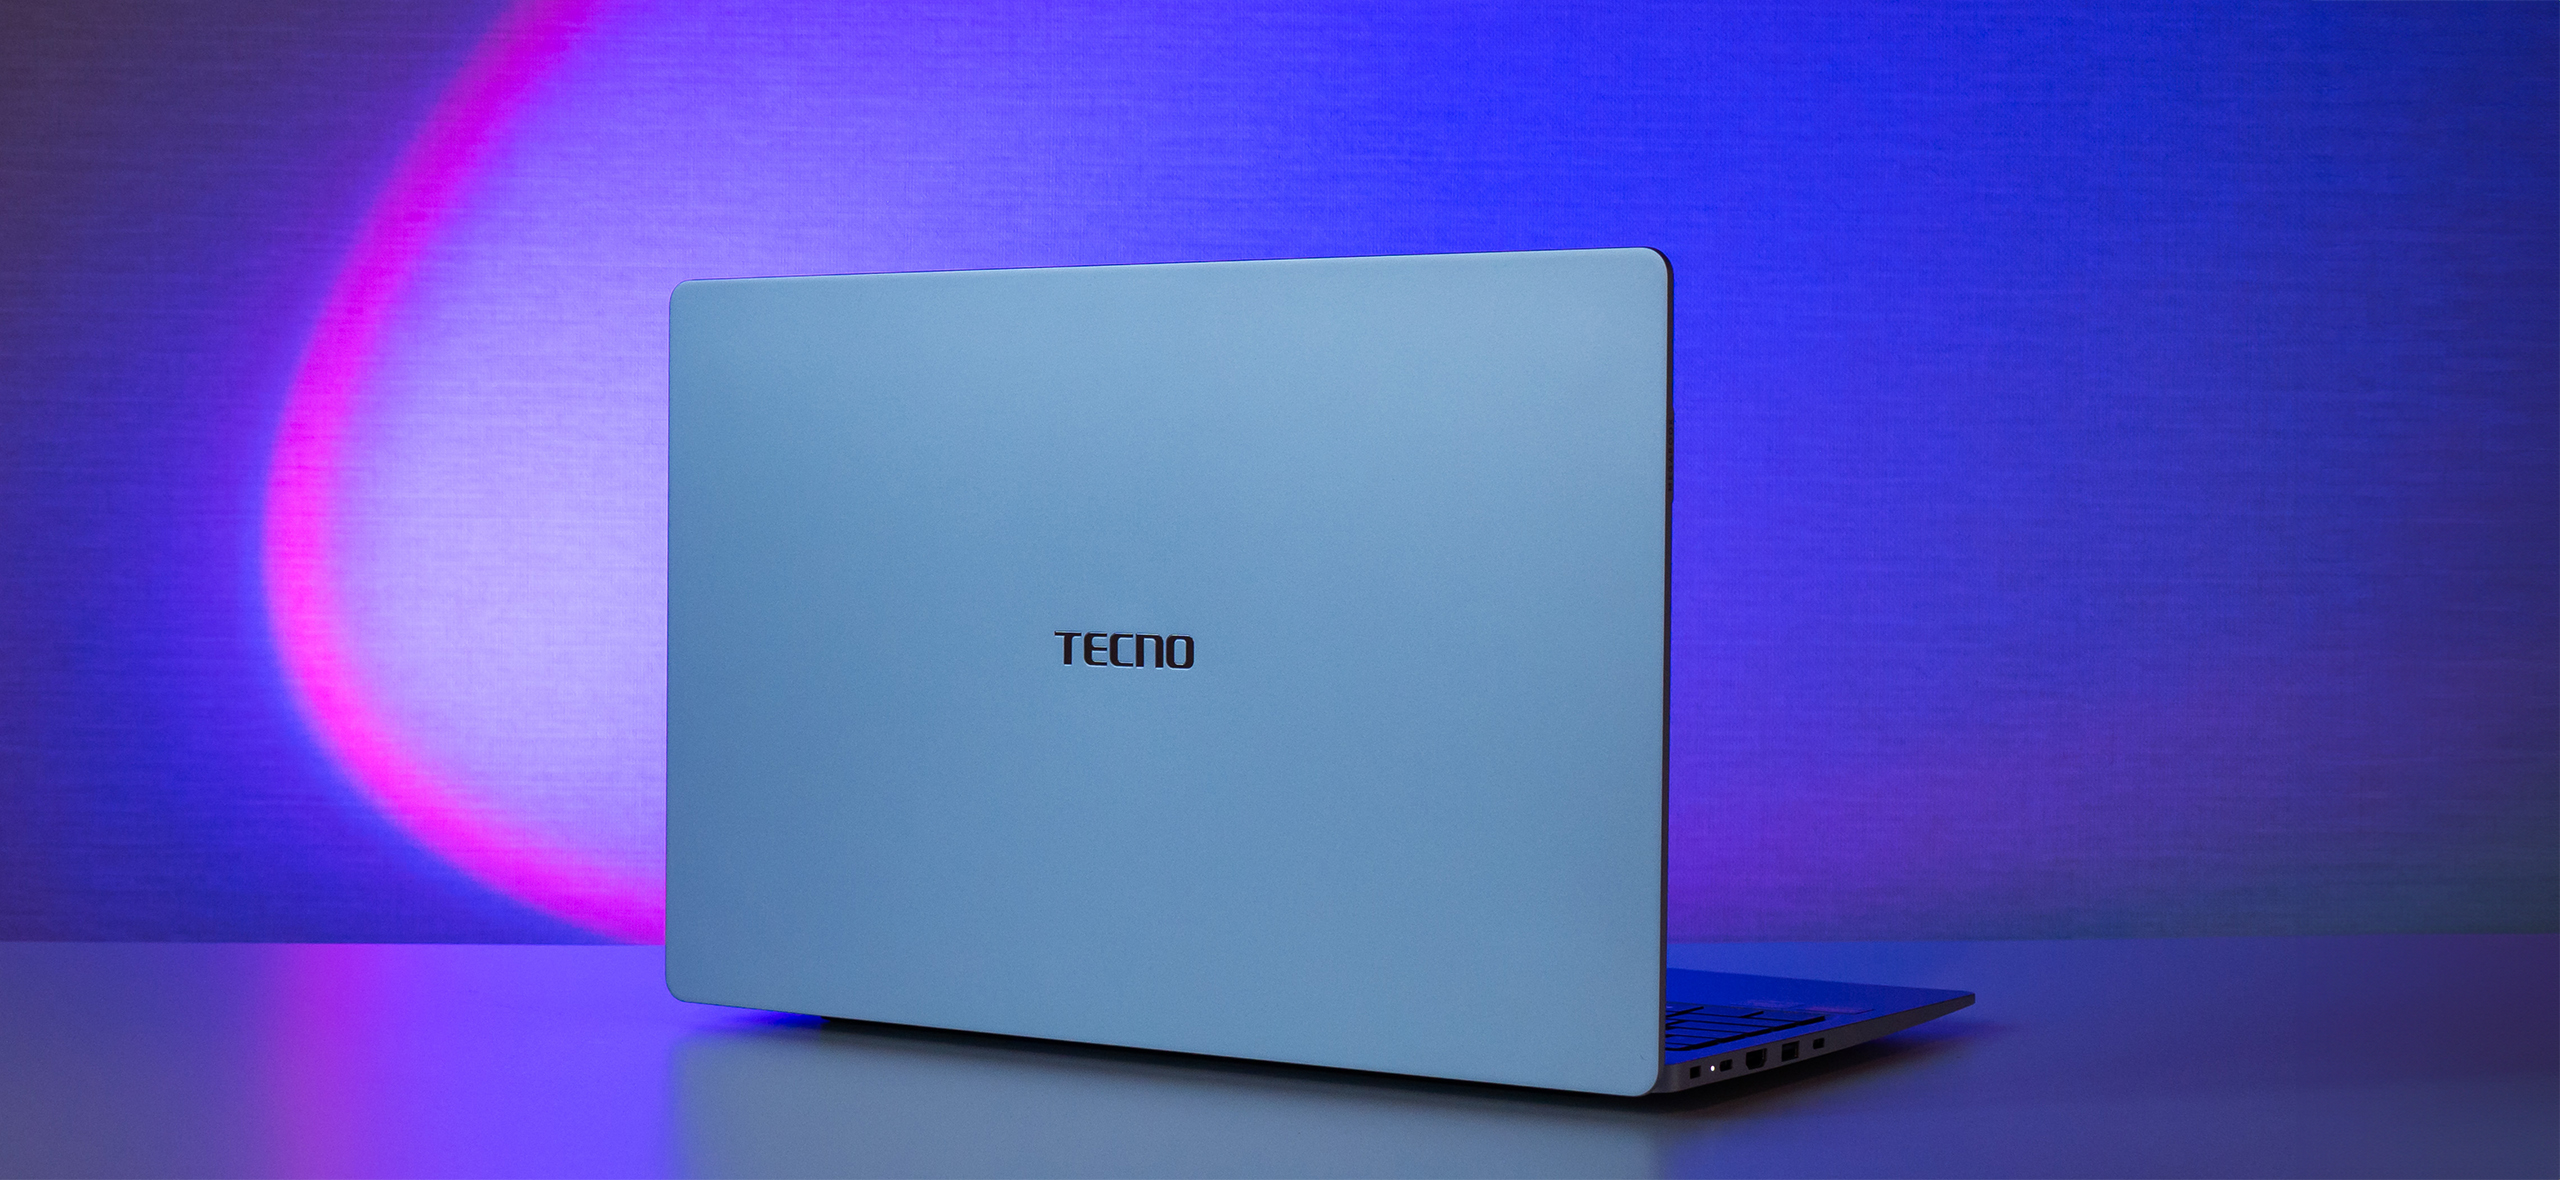 Обзор Tecno Mega­book T1 — бюджетного ноутбука с хорошим экраном